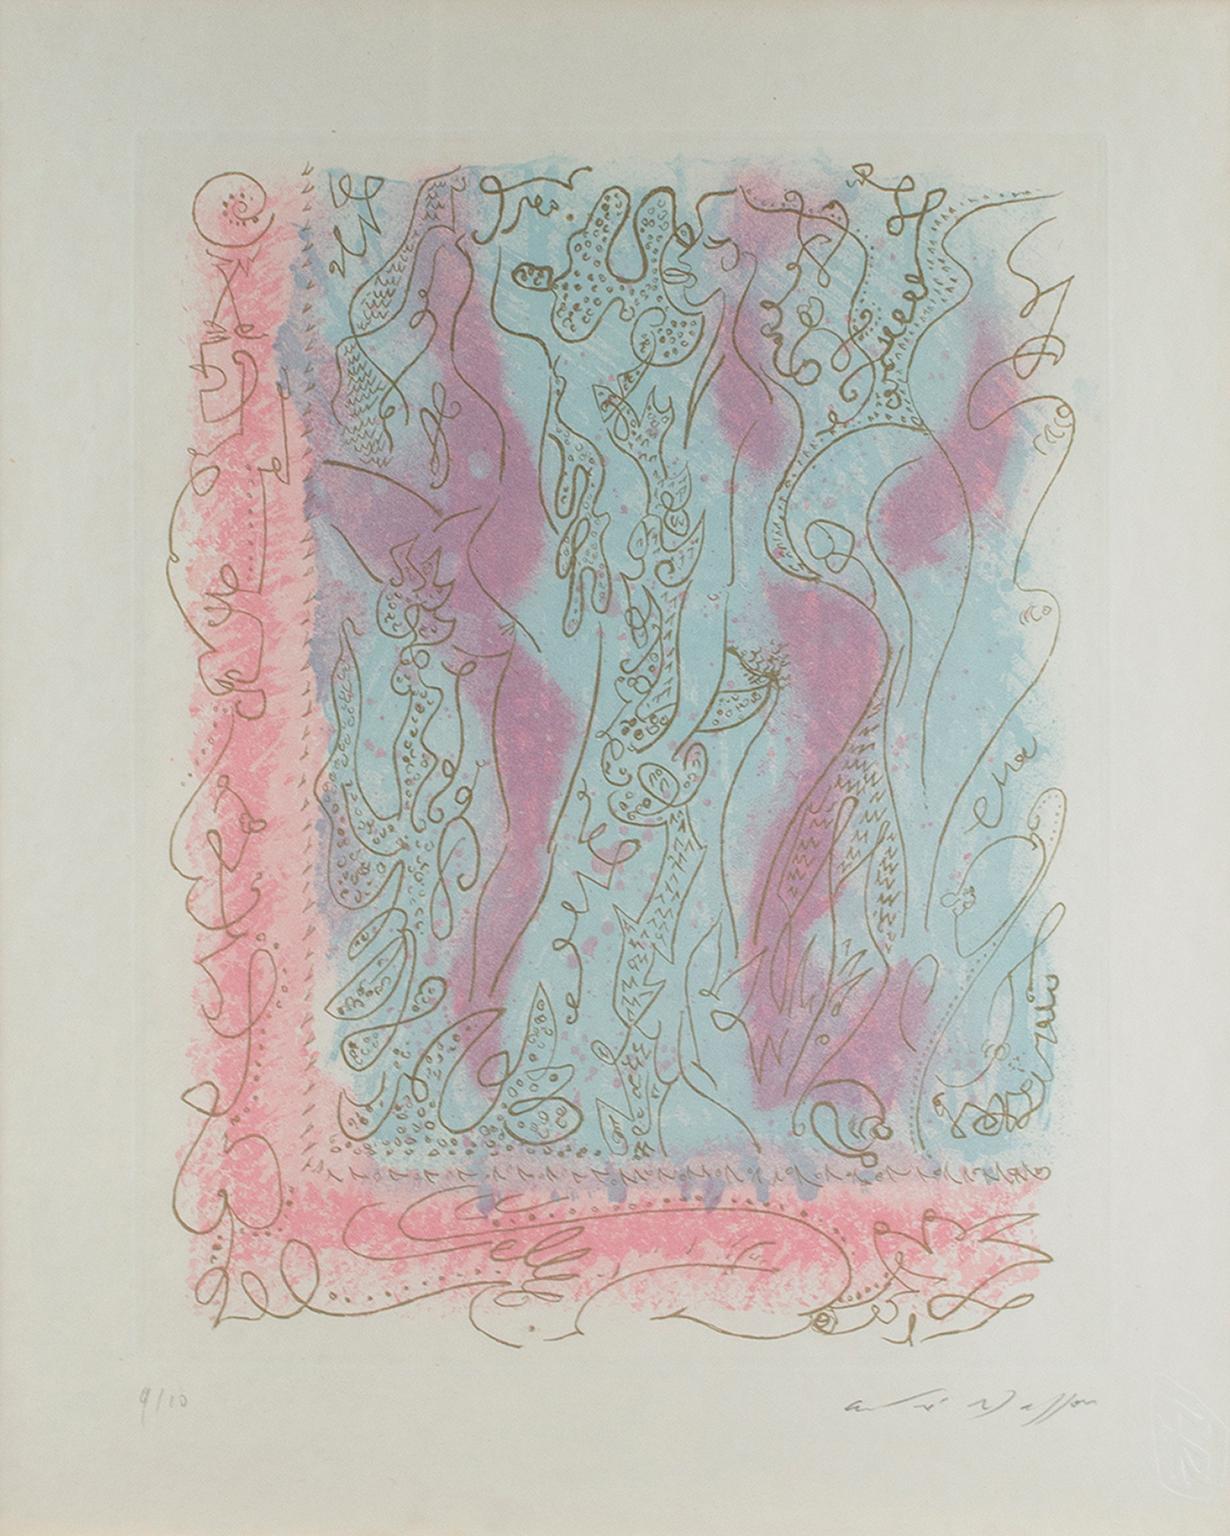 "Les Erophages" est une gravure et aquatinte à l'encre d'or sur papier japonais signée par André Masson. Venant du coin en bas à gauche, il y avait une bordure de rose avec des lignes et des cercles. Deux personnages se tiennent au milieu de la